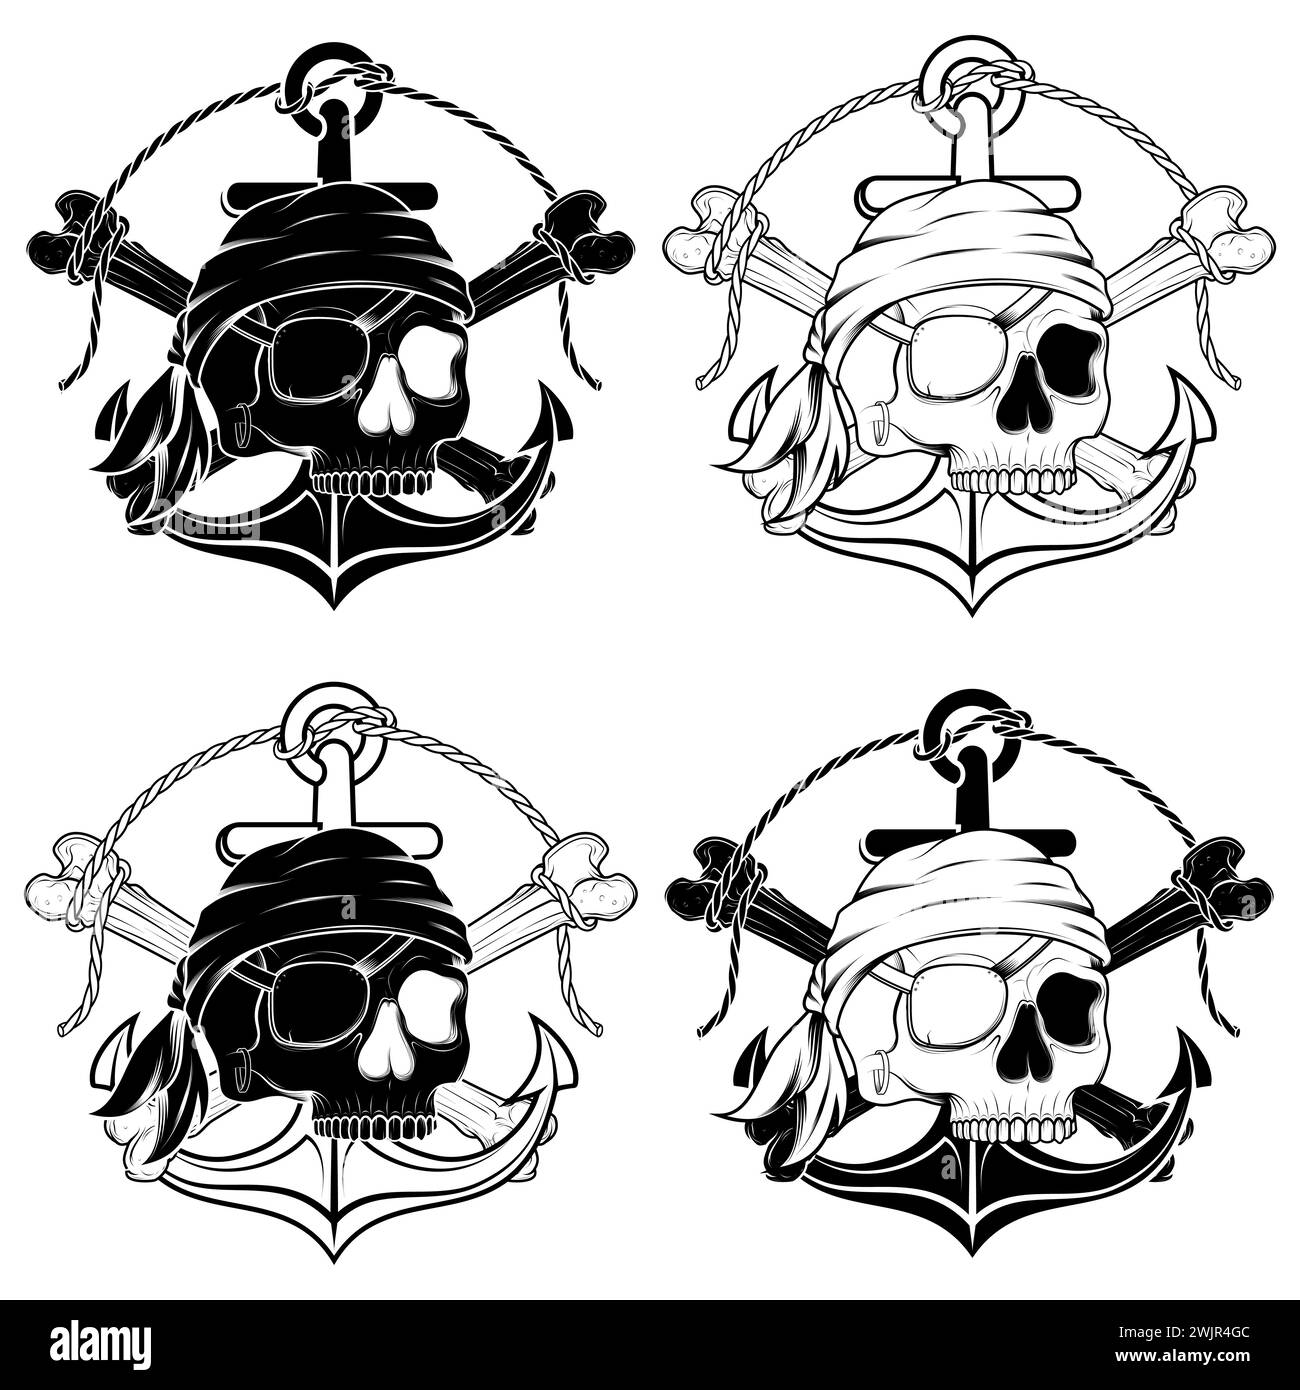 Conception vectorielle inspirée par les pirates, où vous pouvez voir des éléments avec des crânes, des os, des ancres, parcje dans le trou Illustration de Vecteur